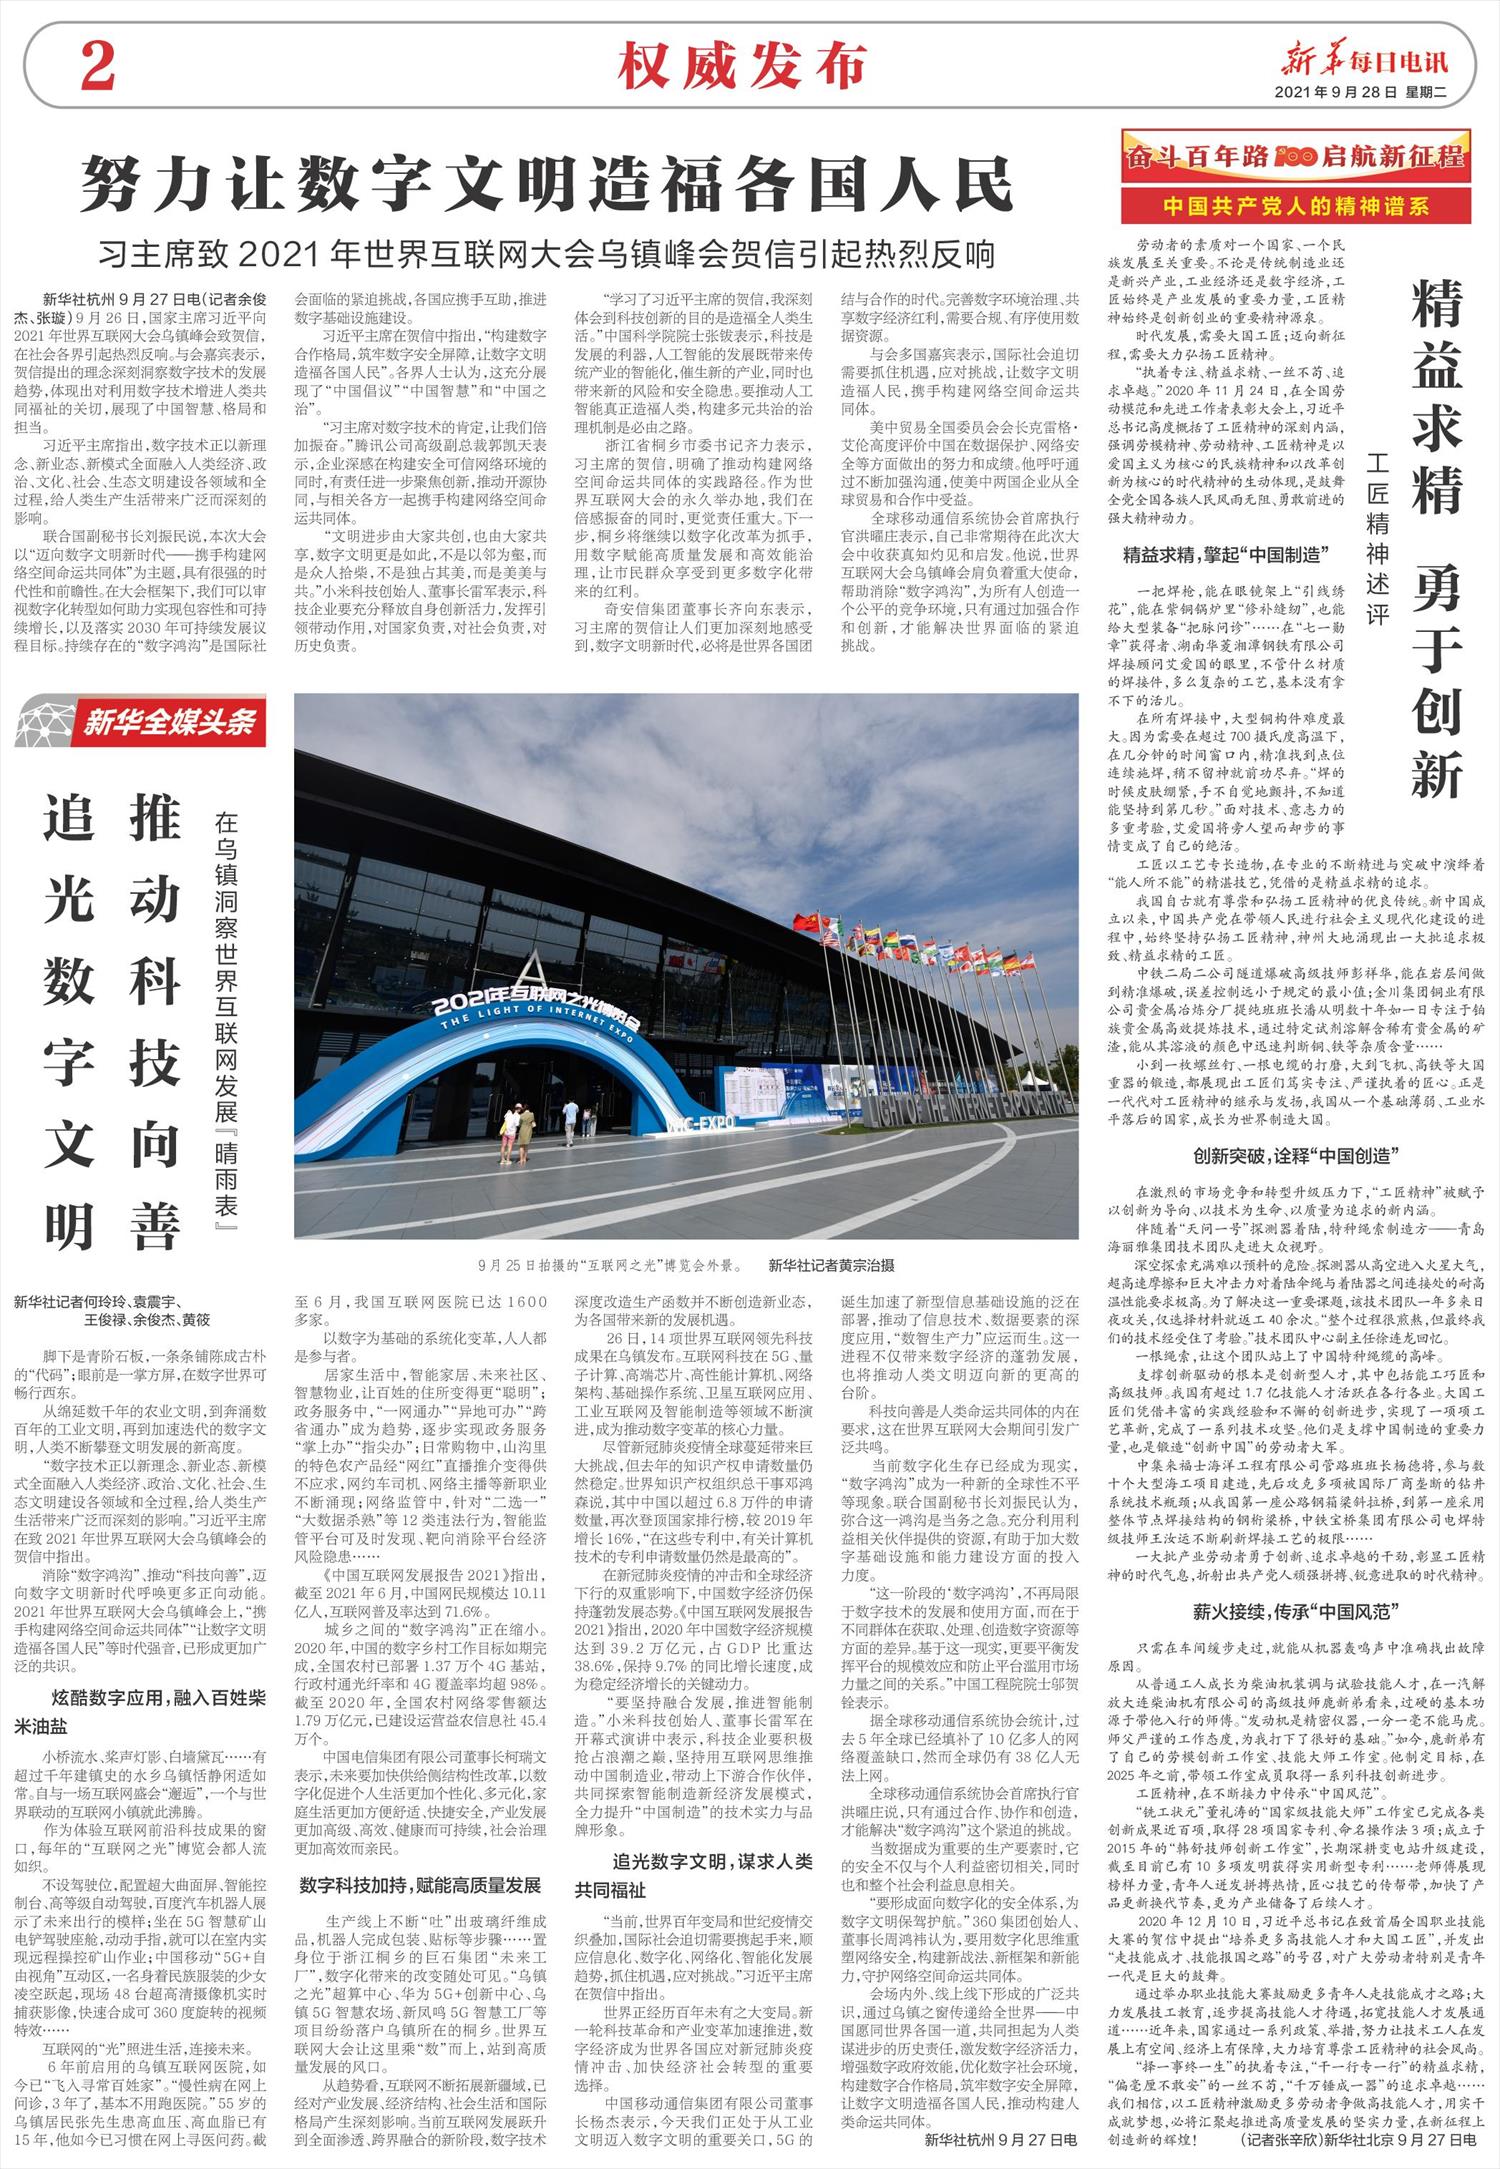 新华每日电讯-微报纸-2021年09月28日